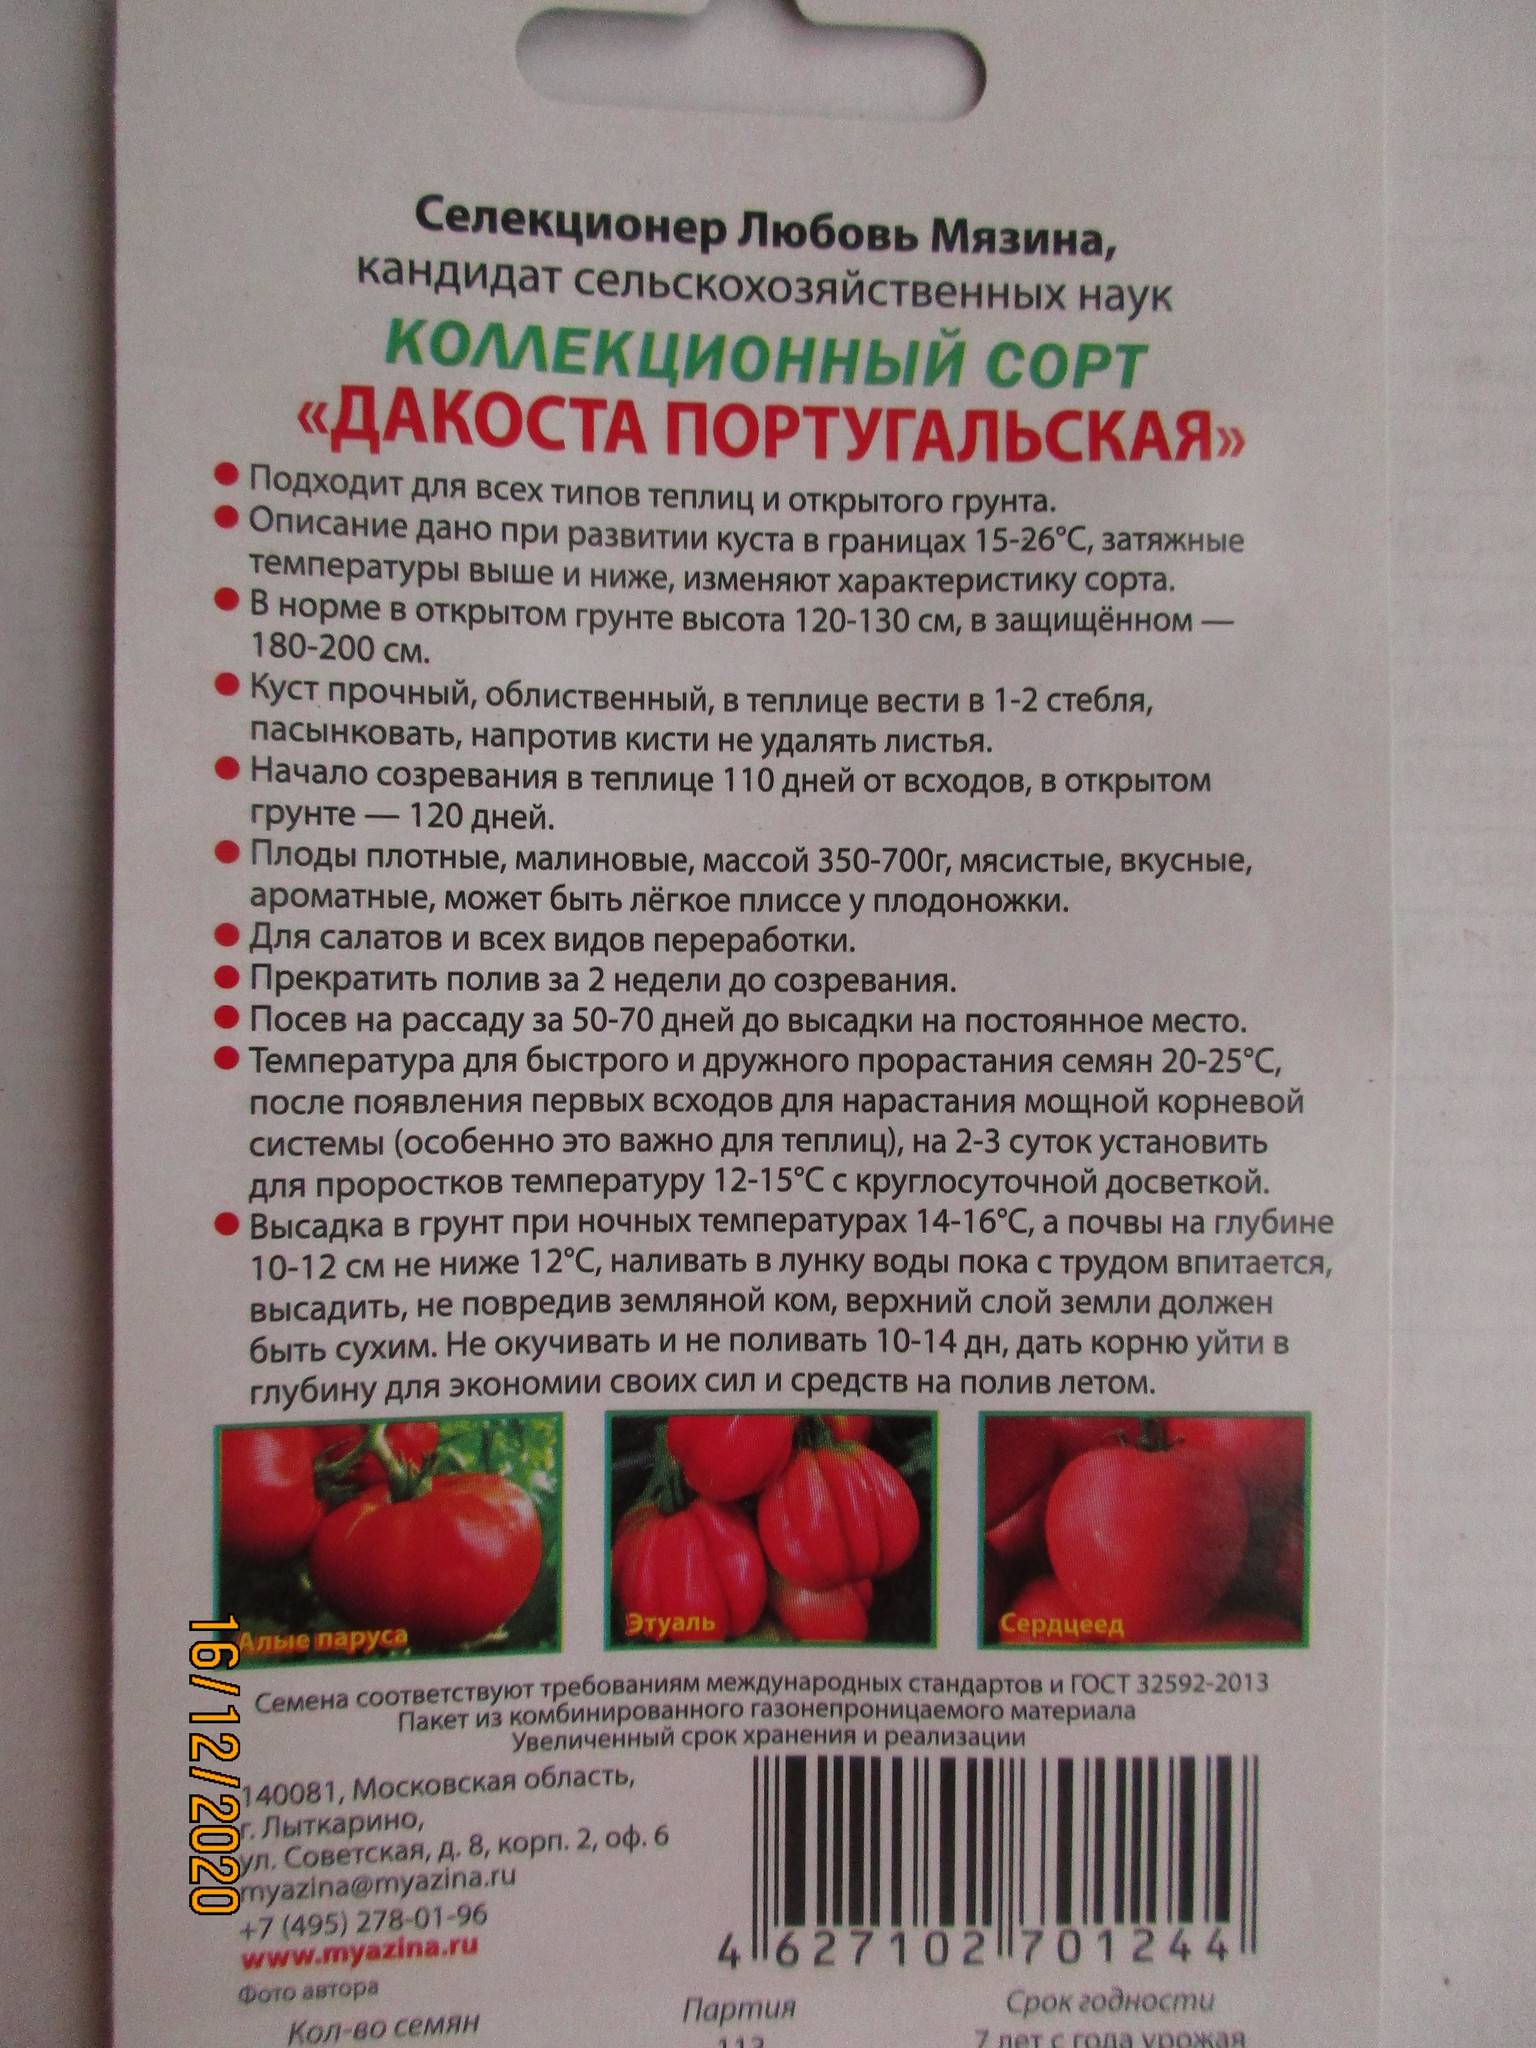 Характеристика томата Дакоста португальская и культивирование сорта